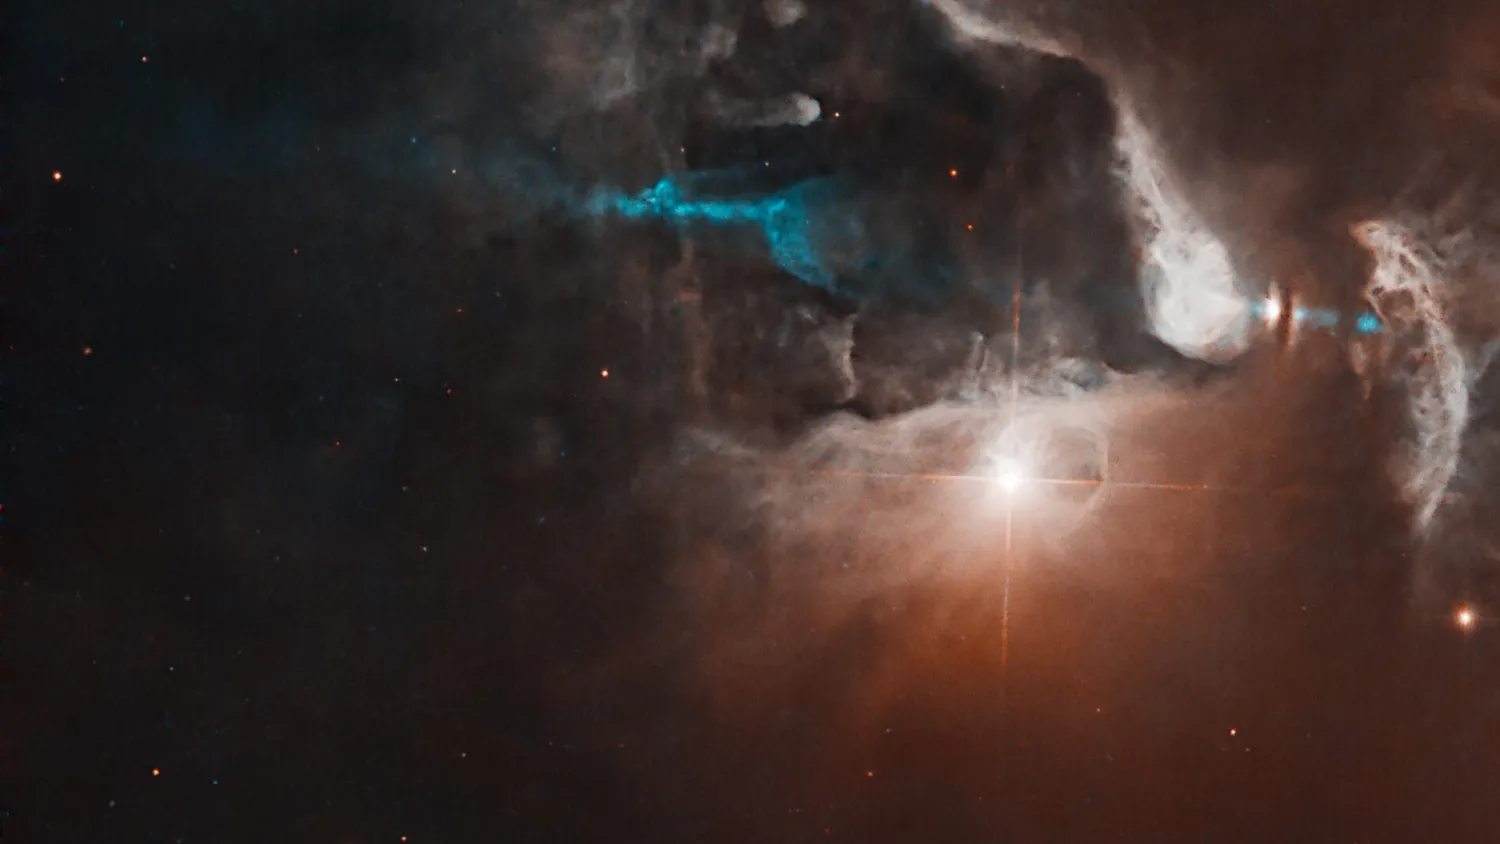 Mehr über den Artikel erfahren Neuer Stern kündigt sich bei Hubble mit einer atemberaubenden kosmischen Lichtshow an (Bild)